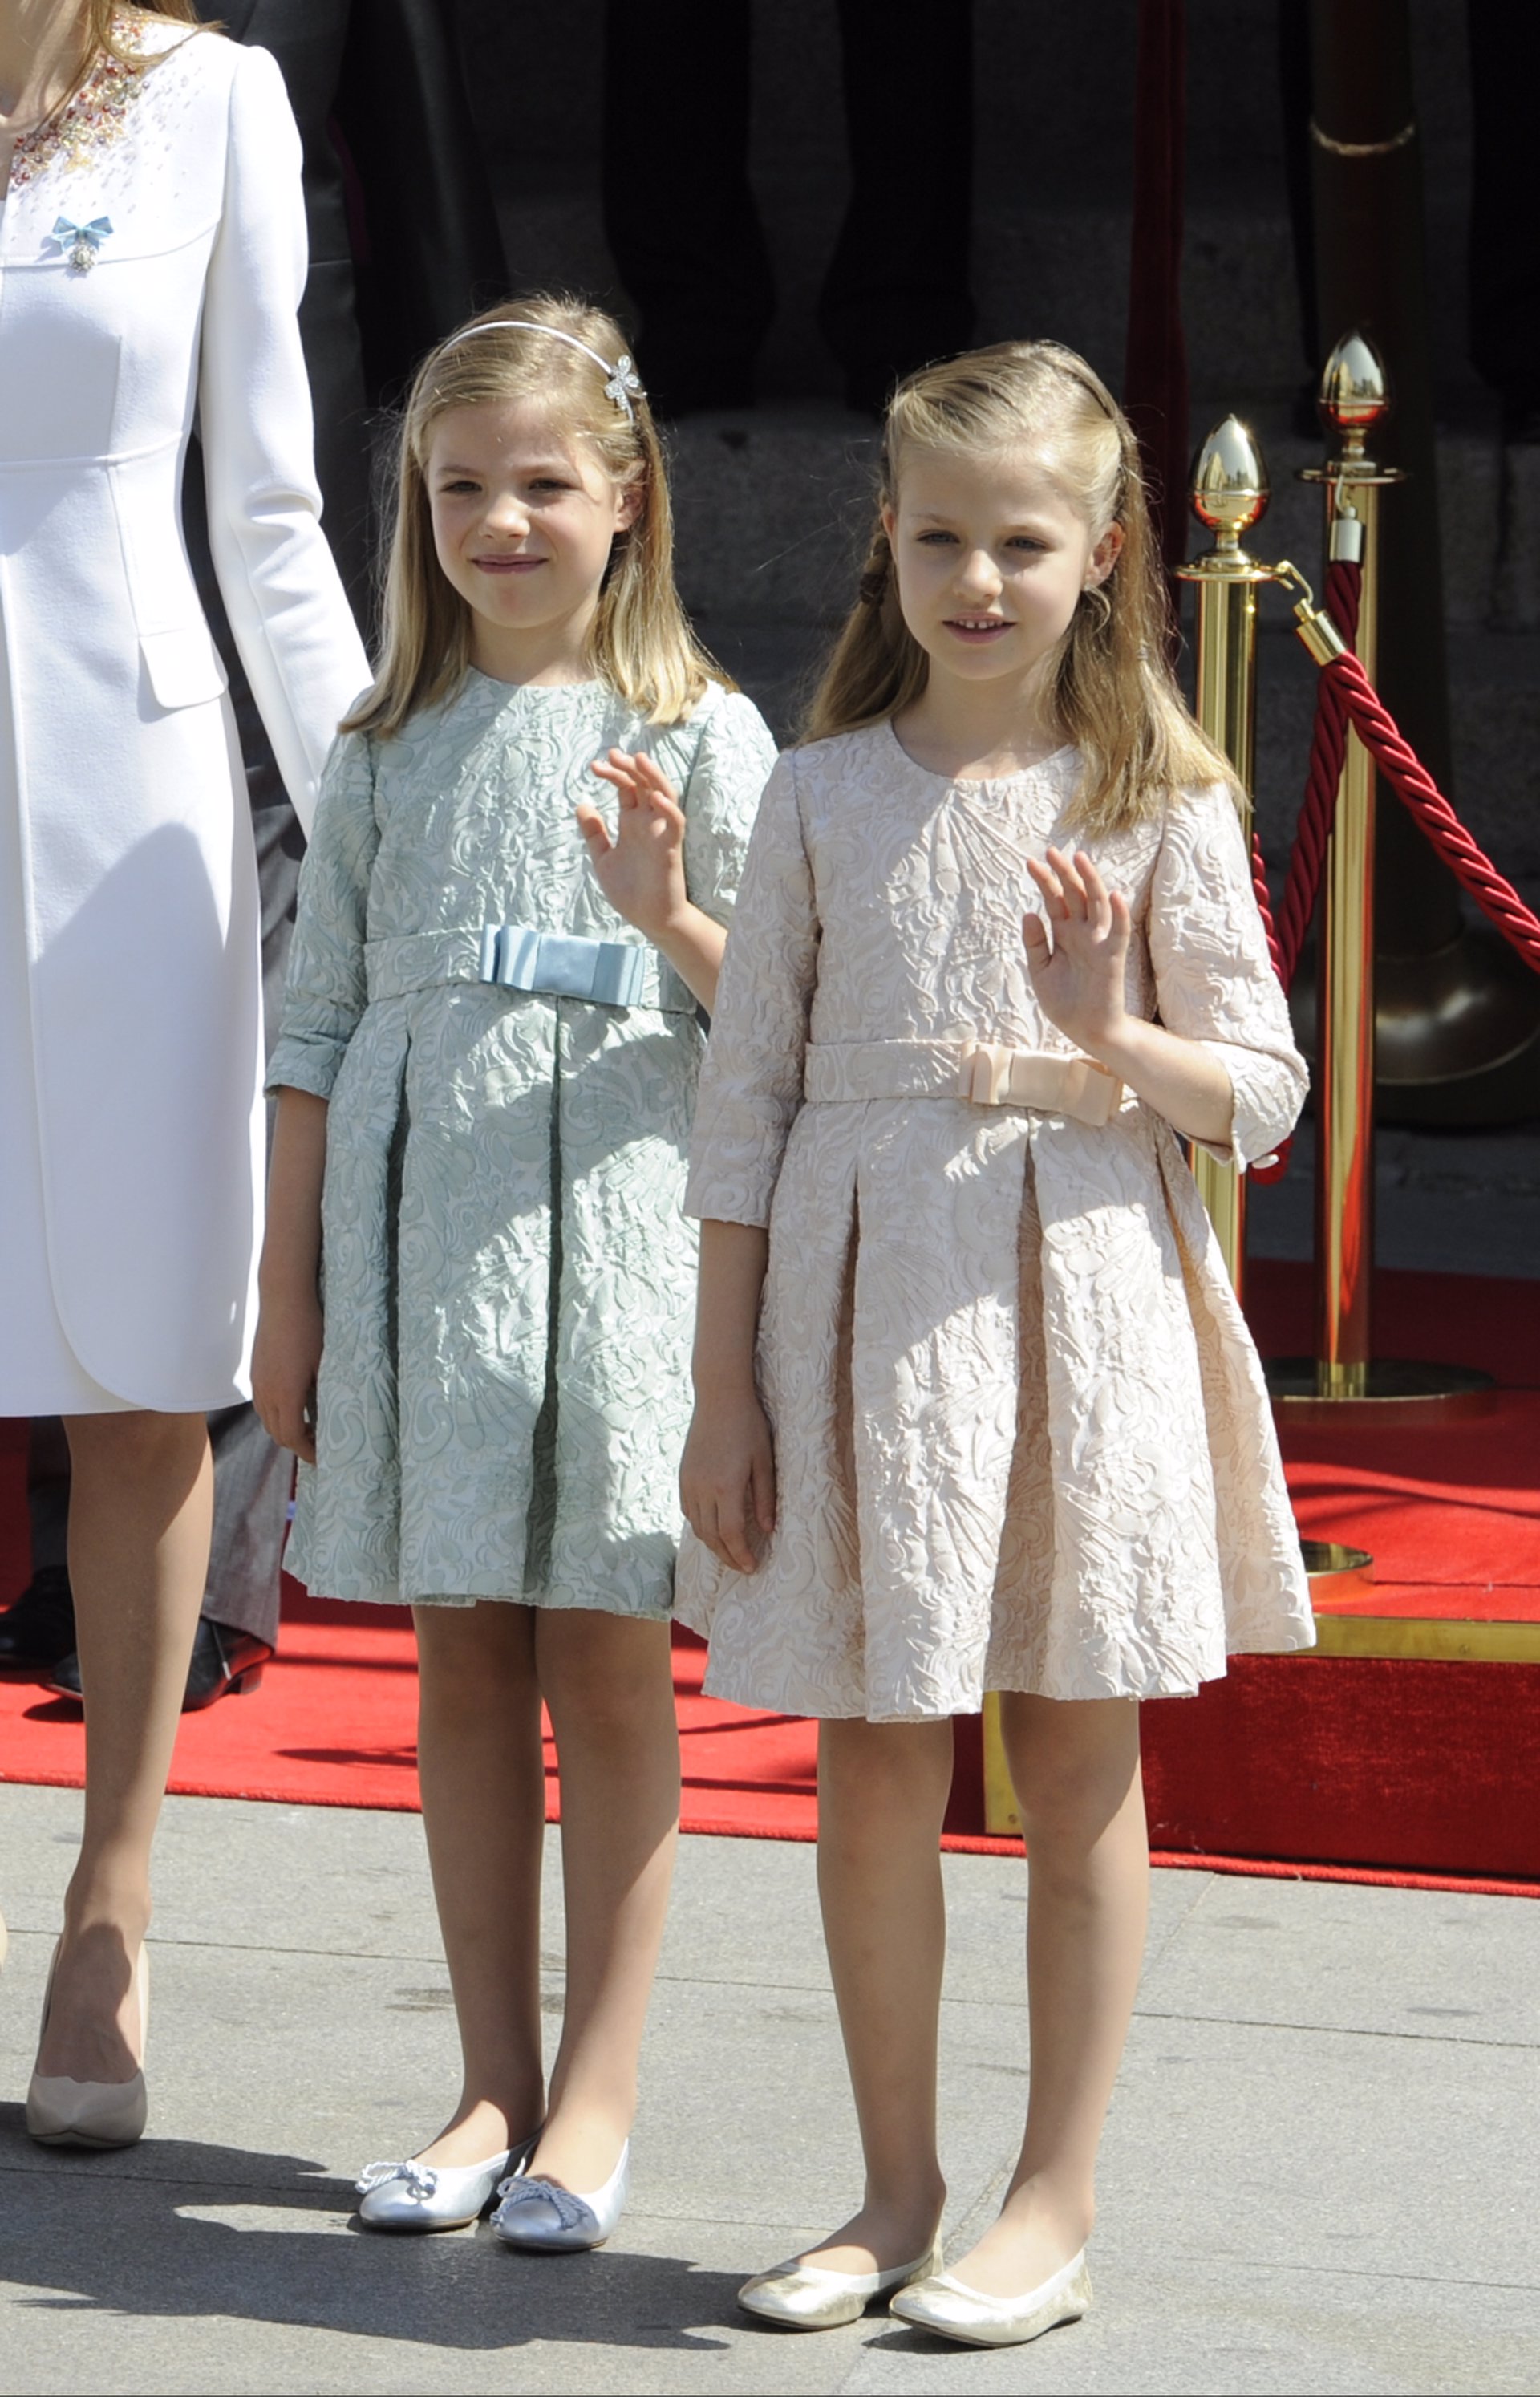 Proclamación del Rey Felipe VI el 19 de junio de 2014, Leonor lució unas bailarinas plateadas, otro must para tener de fondo de armario.